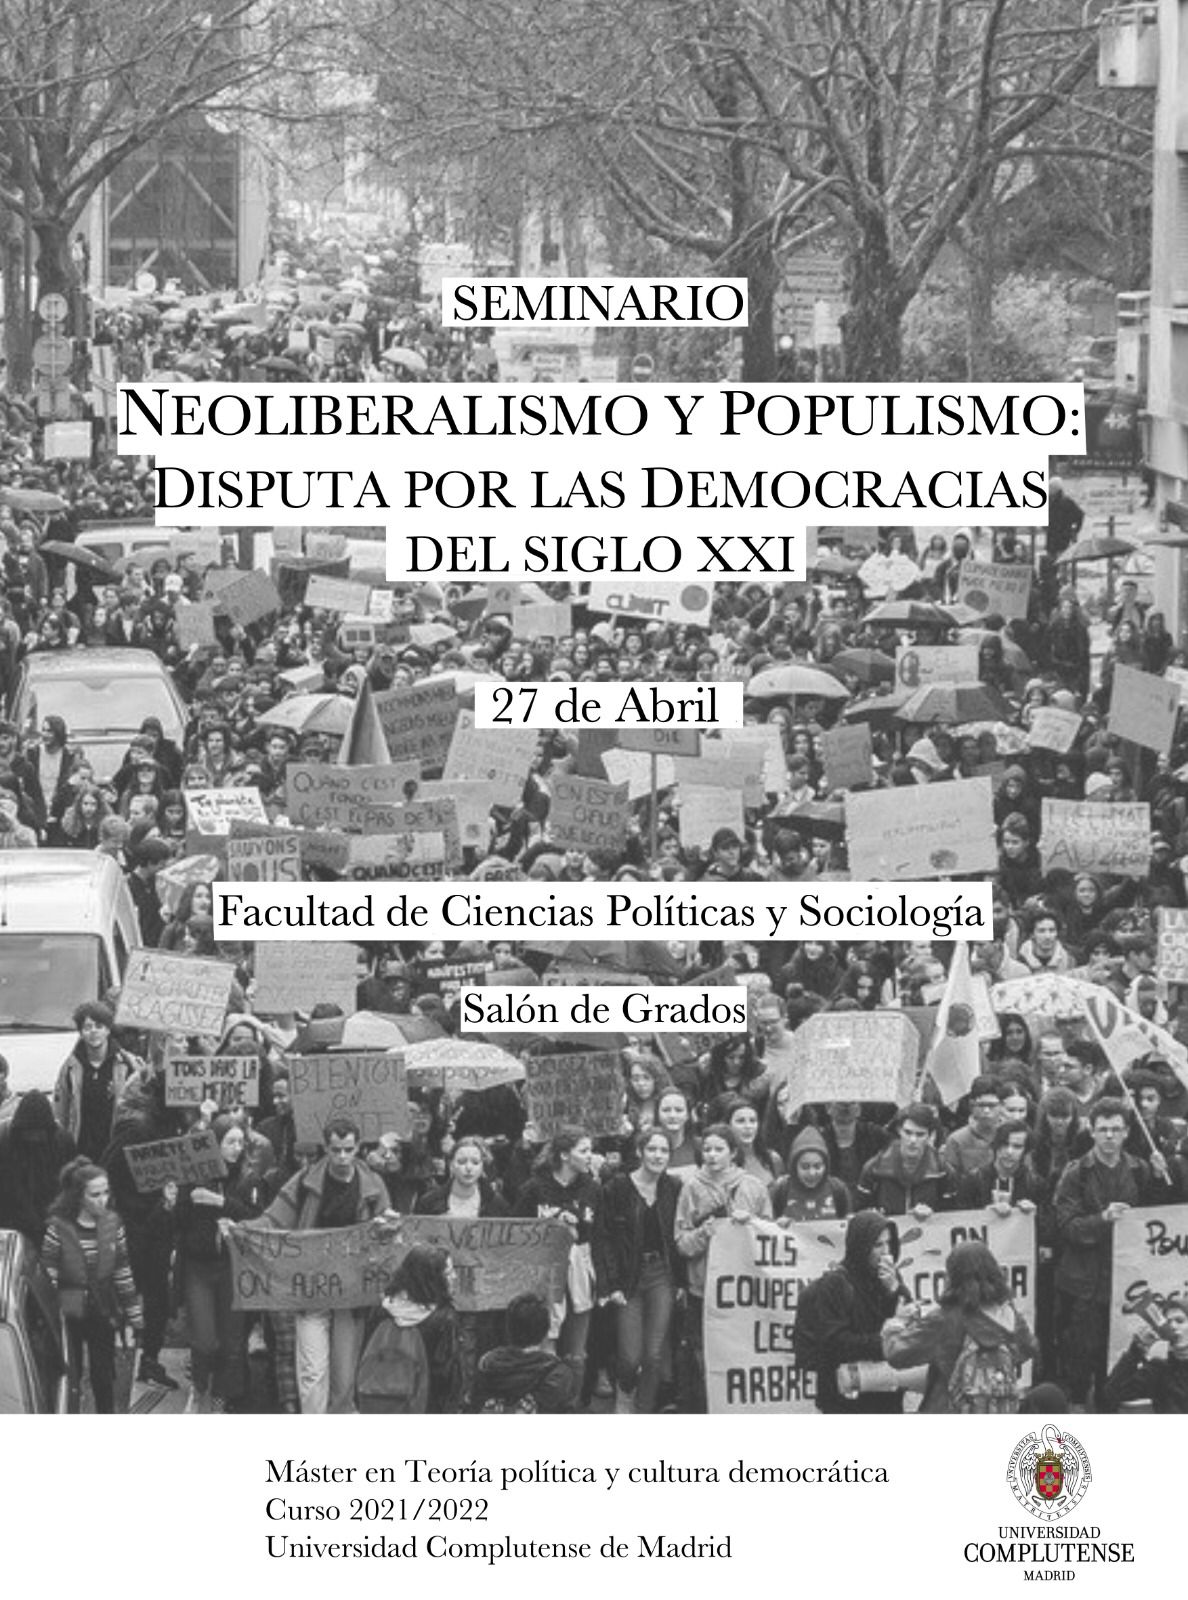 Seminario "Neoliberalismo y populismo: disputa por las democracias del siglo XXI"